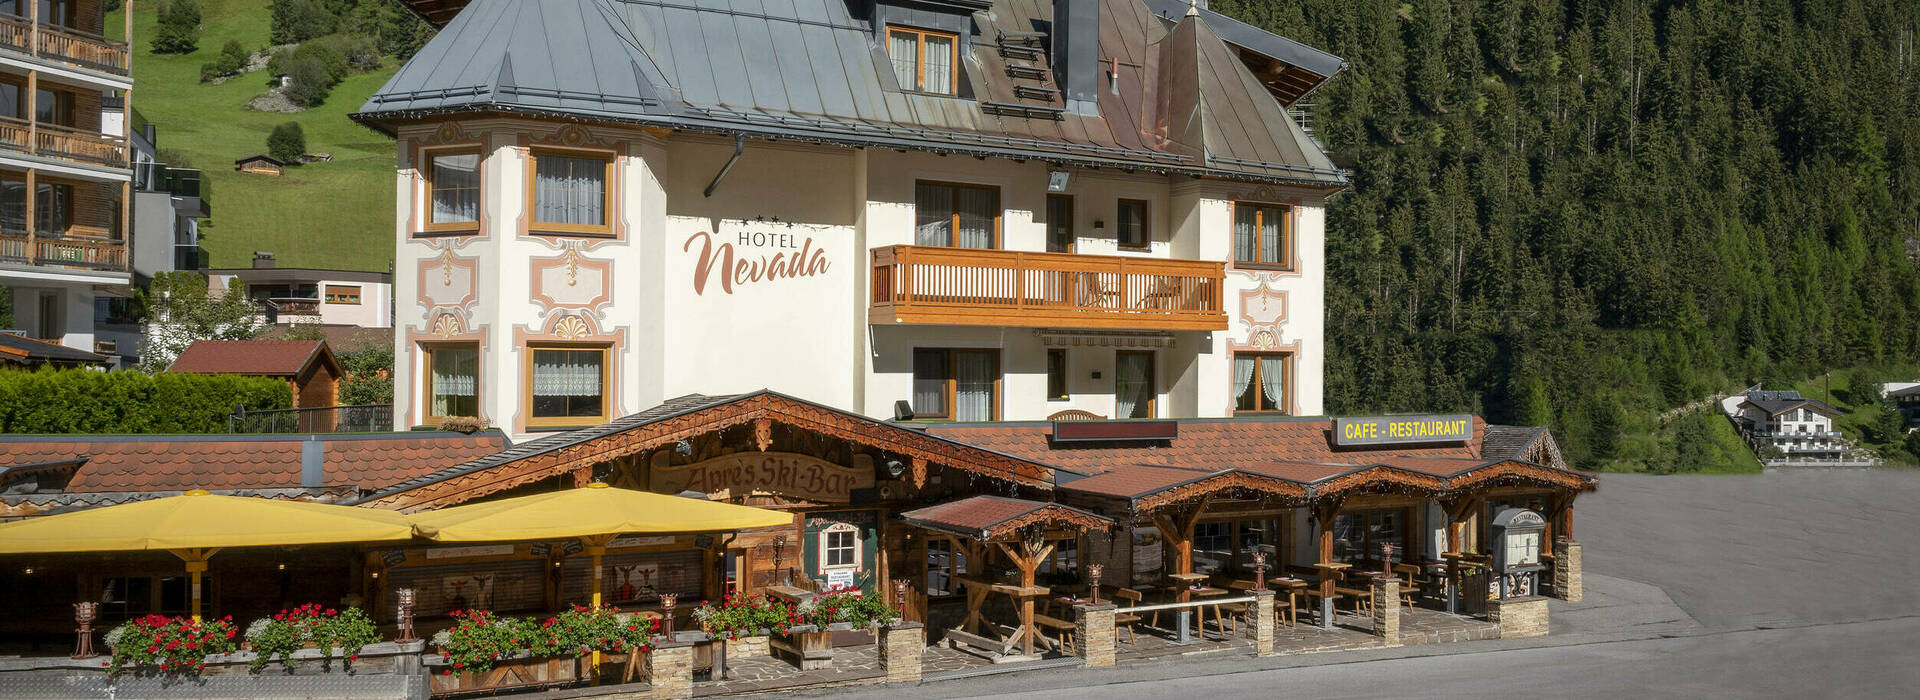 Hotel & Restaurant Nevada in Ischgl 